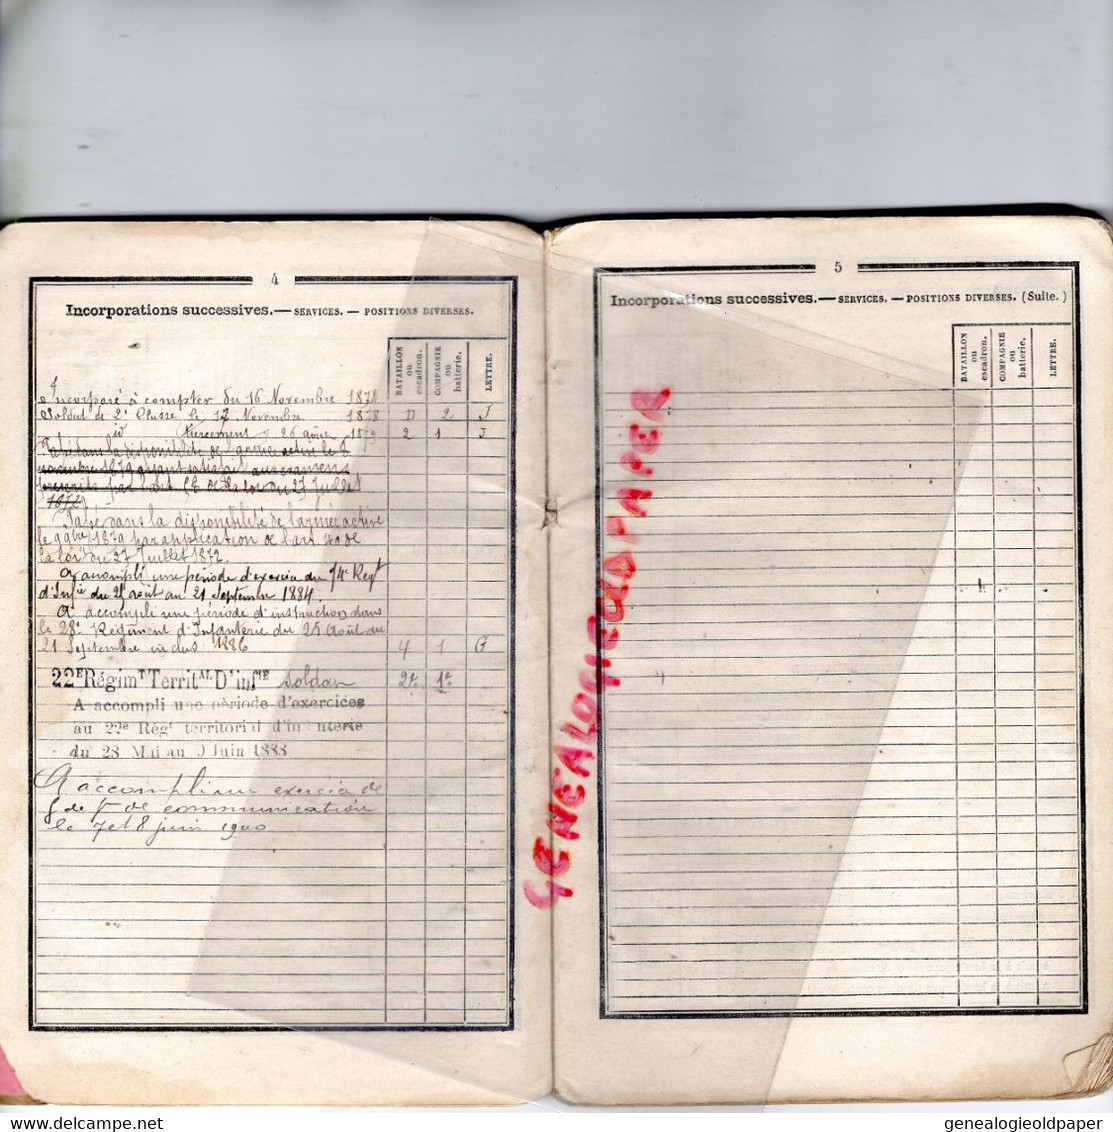 27- LES ANDELYS-LIVRET MILITAIRE HENRI DESIRE PARISSE-22-74 REGIMENT INFANTERIE ROUEN CASERNE PELISSIER - 1878 TIR CIBLE